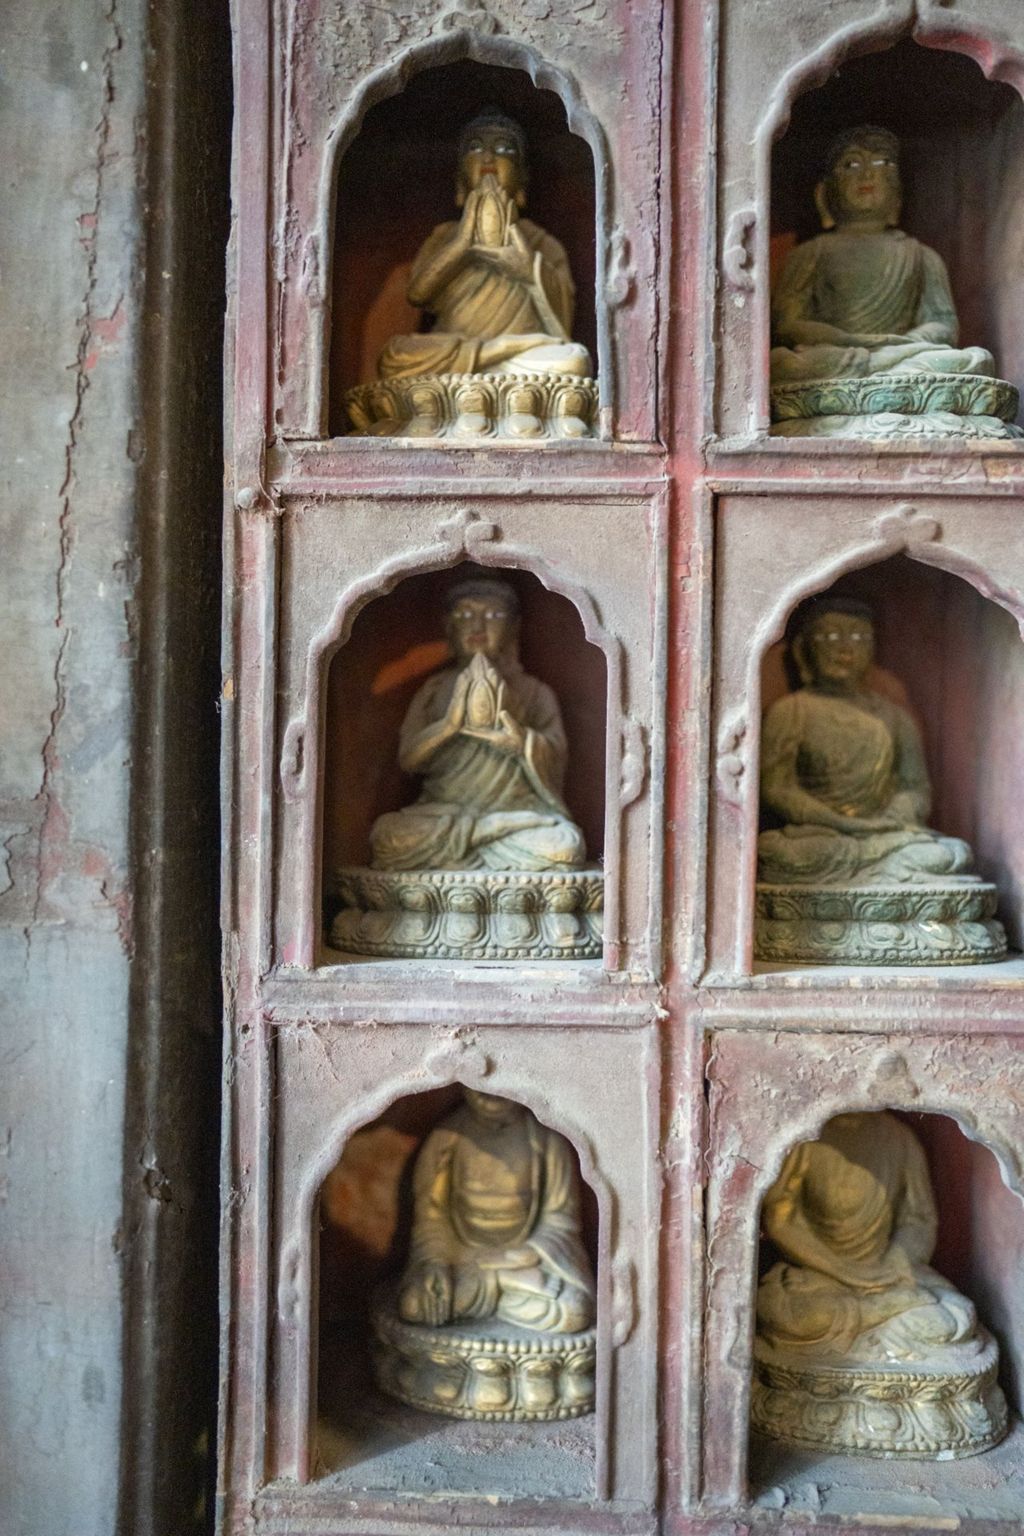 Miniature of Rulai Hall (Rulaidian, Tathagatha Hall or Shakyamuni Hall), small Buddha shrines